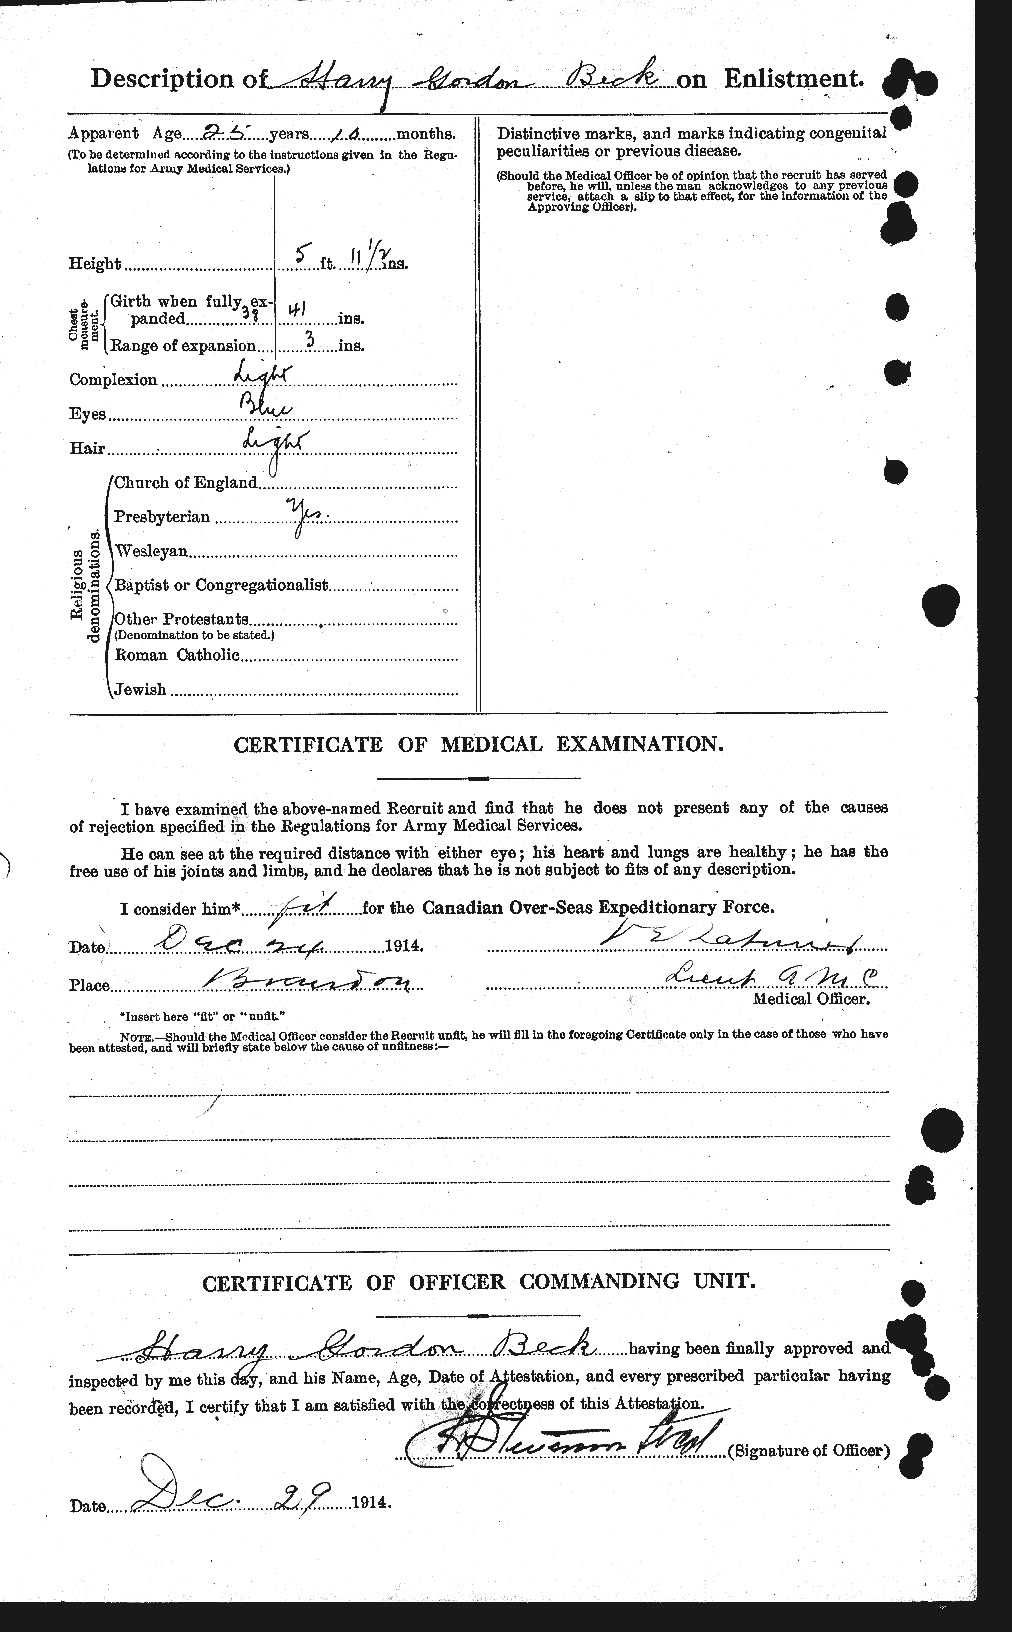 Dossiers du Personnel de la Première Guerre mondiale - CEC 232127b